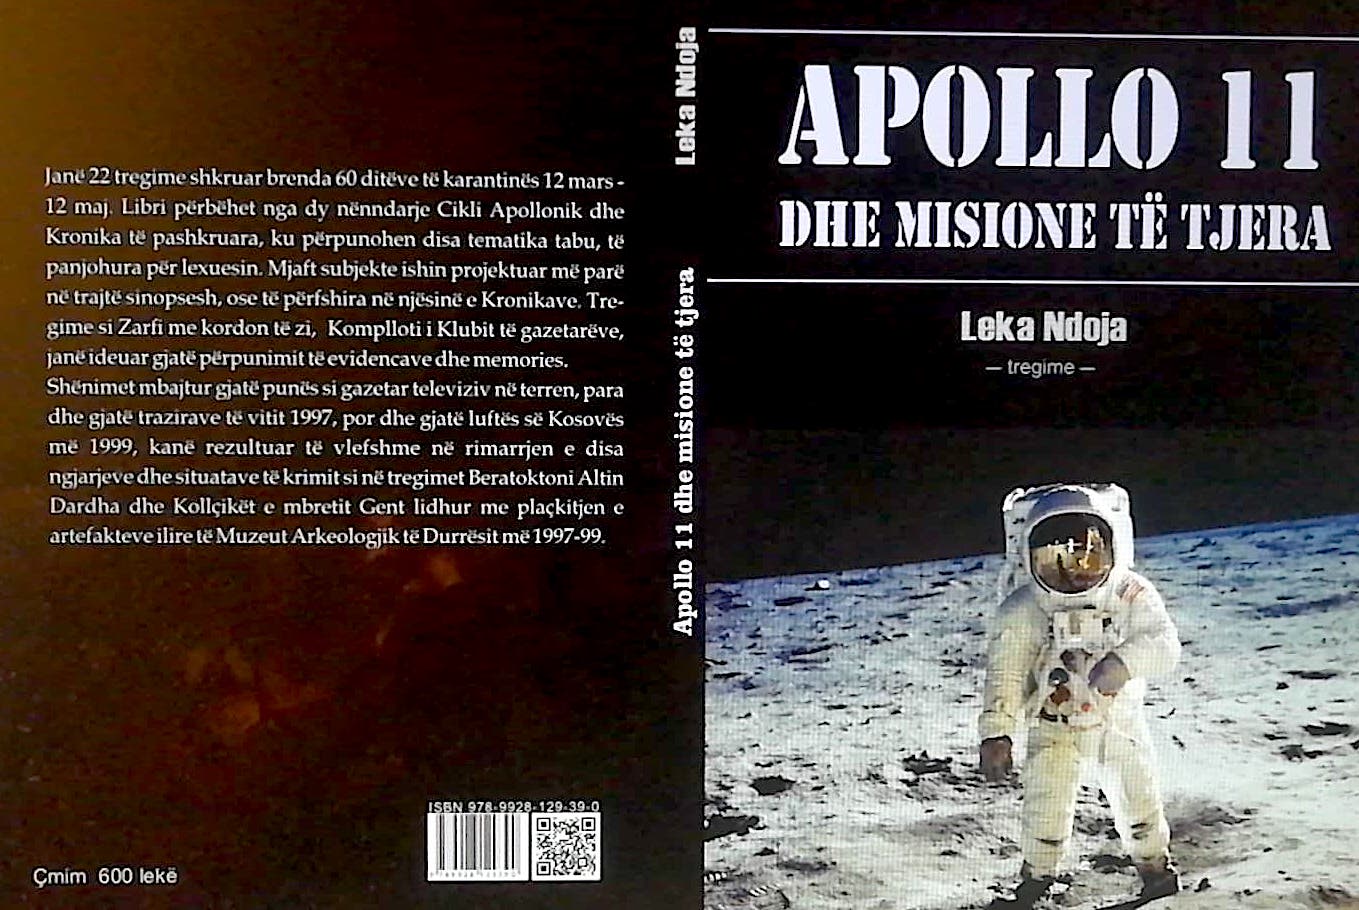 Apollo 11 dhe misione te tjera - Tregime nga Leka Ndoja